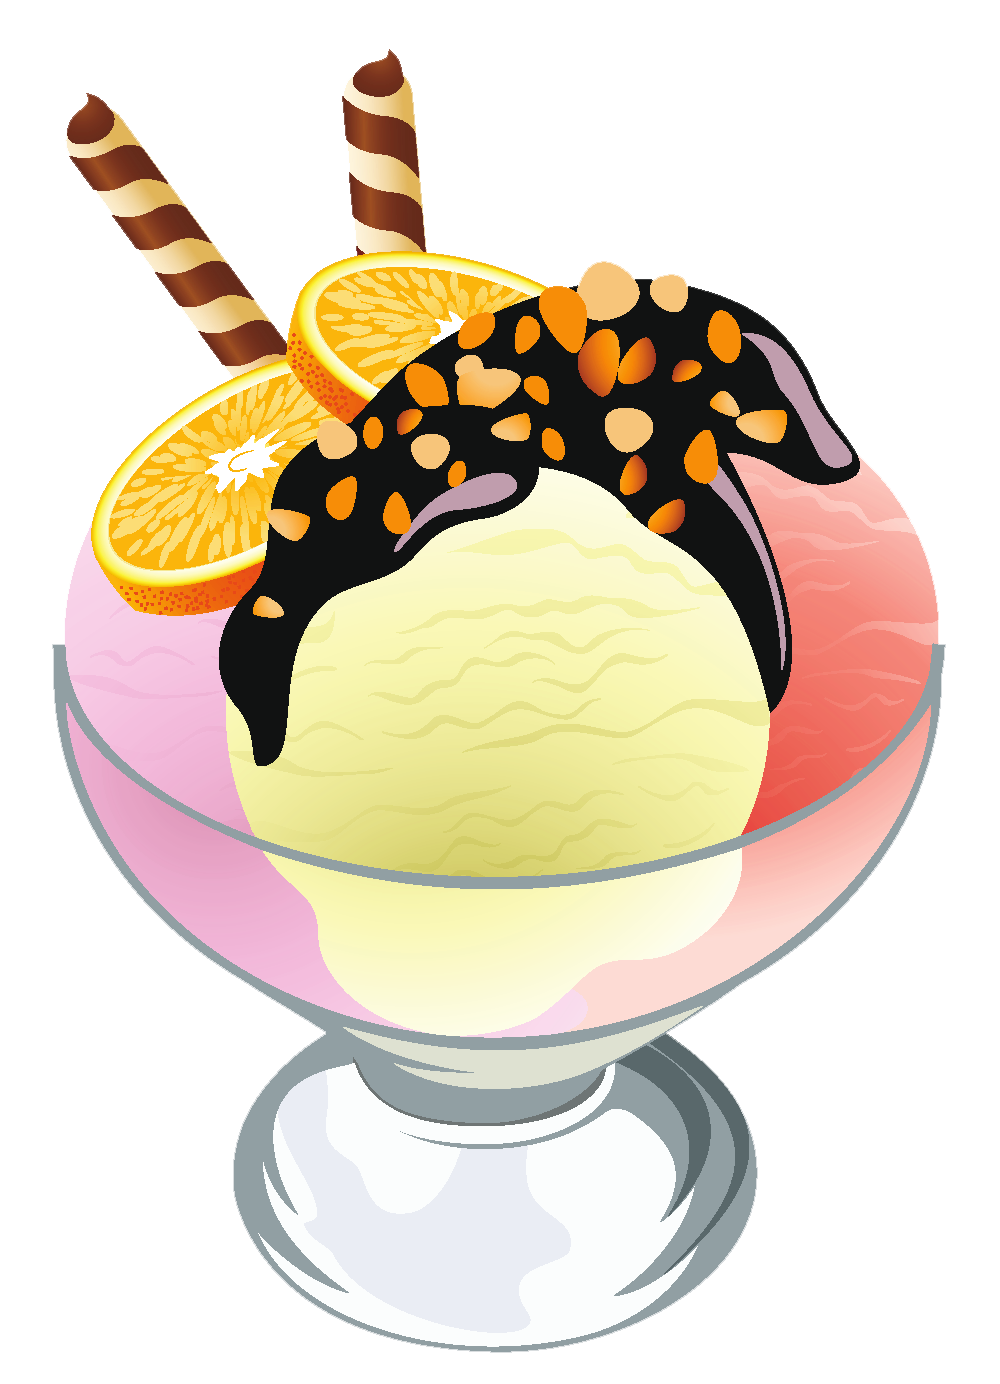 Ice Cream Sundae Clipart #240